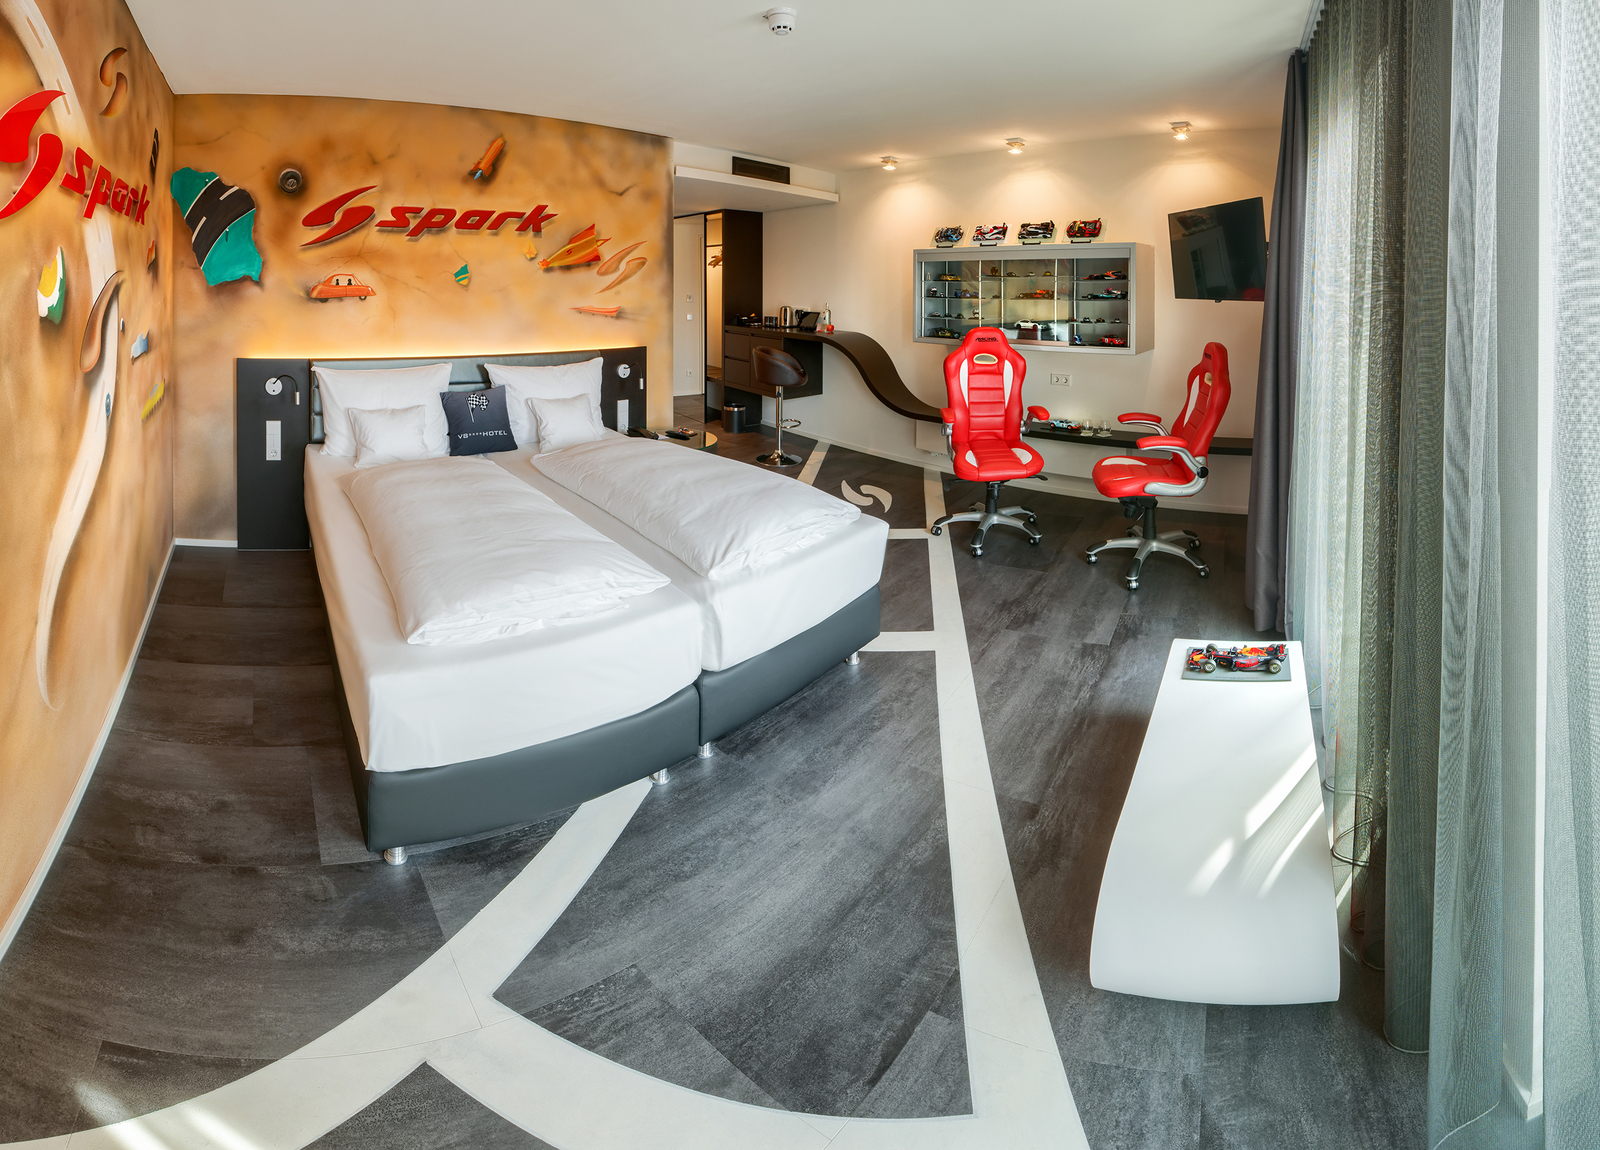 Spark-Themenzimmer im V8 Hotel mit passend bemalten Wänden und zwei roten Schreibtischstühlen neben dem gemütlichem Doppelbett